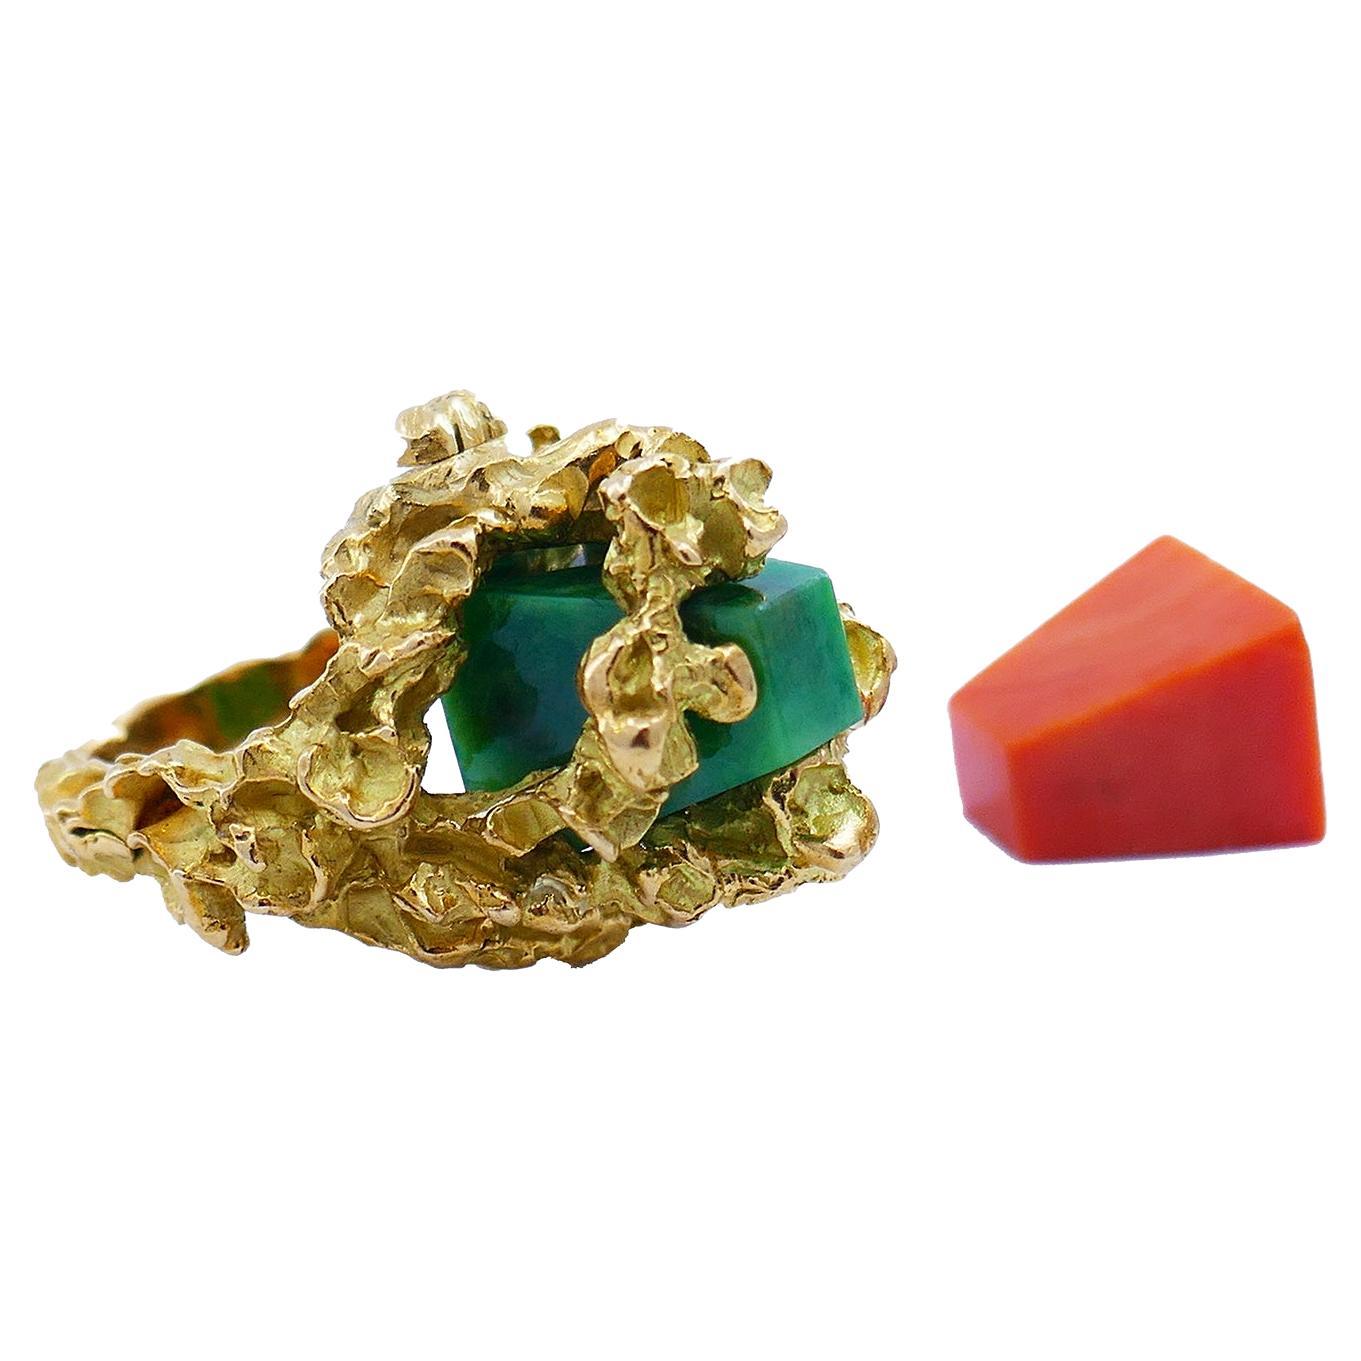 Bague Chaumet en or 18 carats, corail et jade, de style moderniste français du milieu du siècle dernier